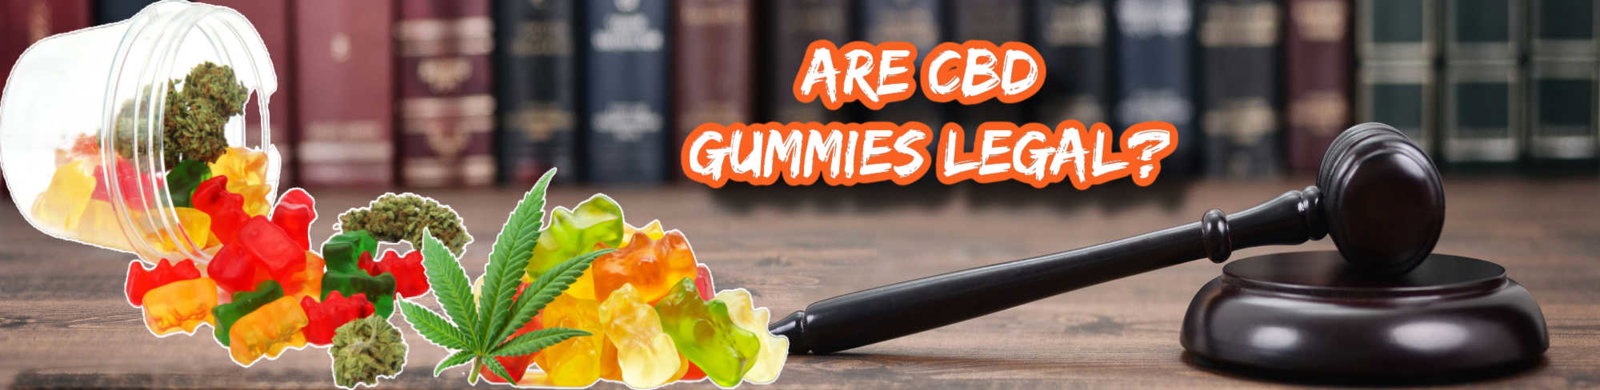 image of are cbd gummies legal